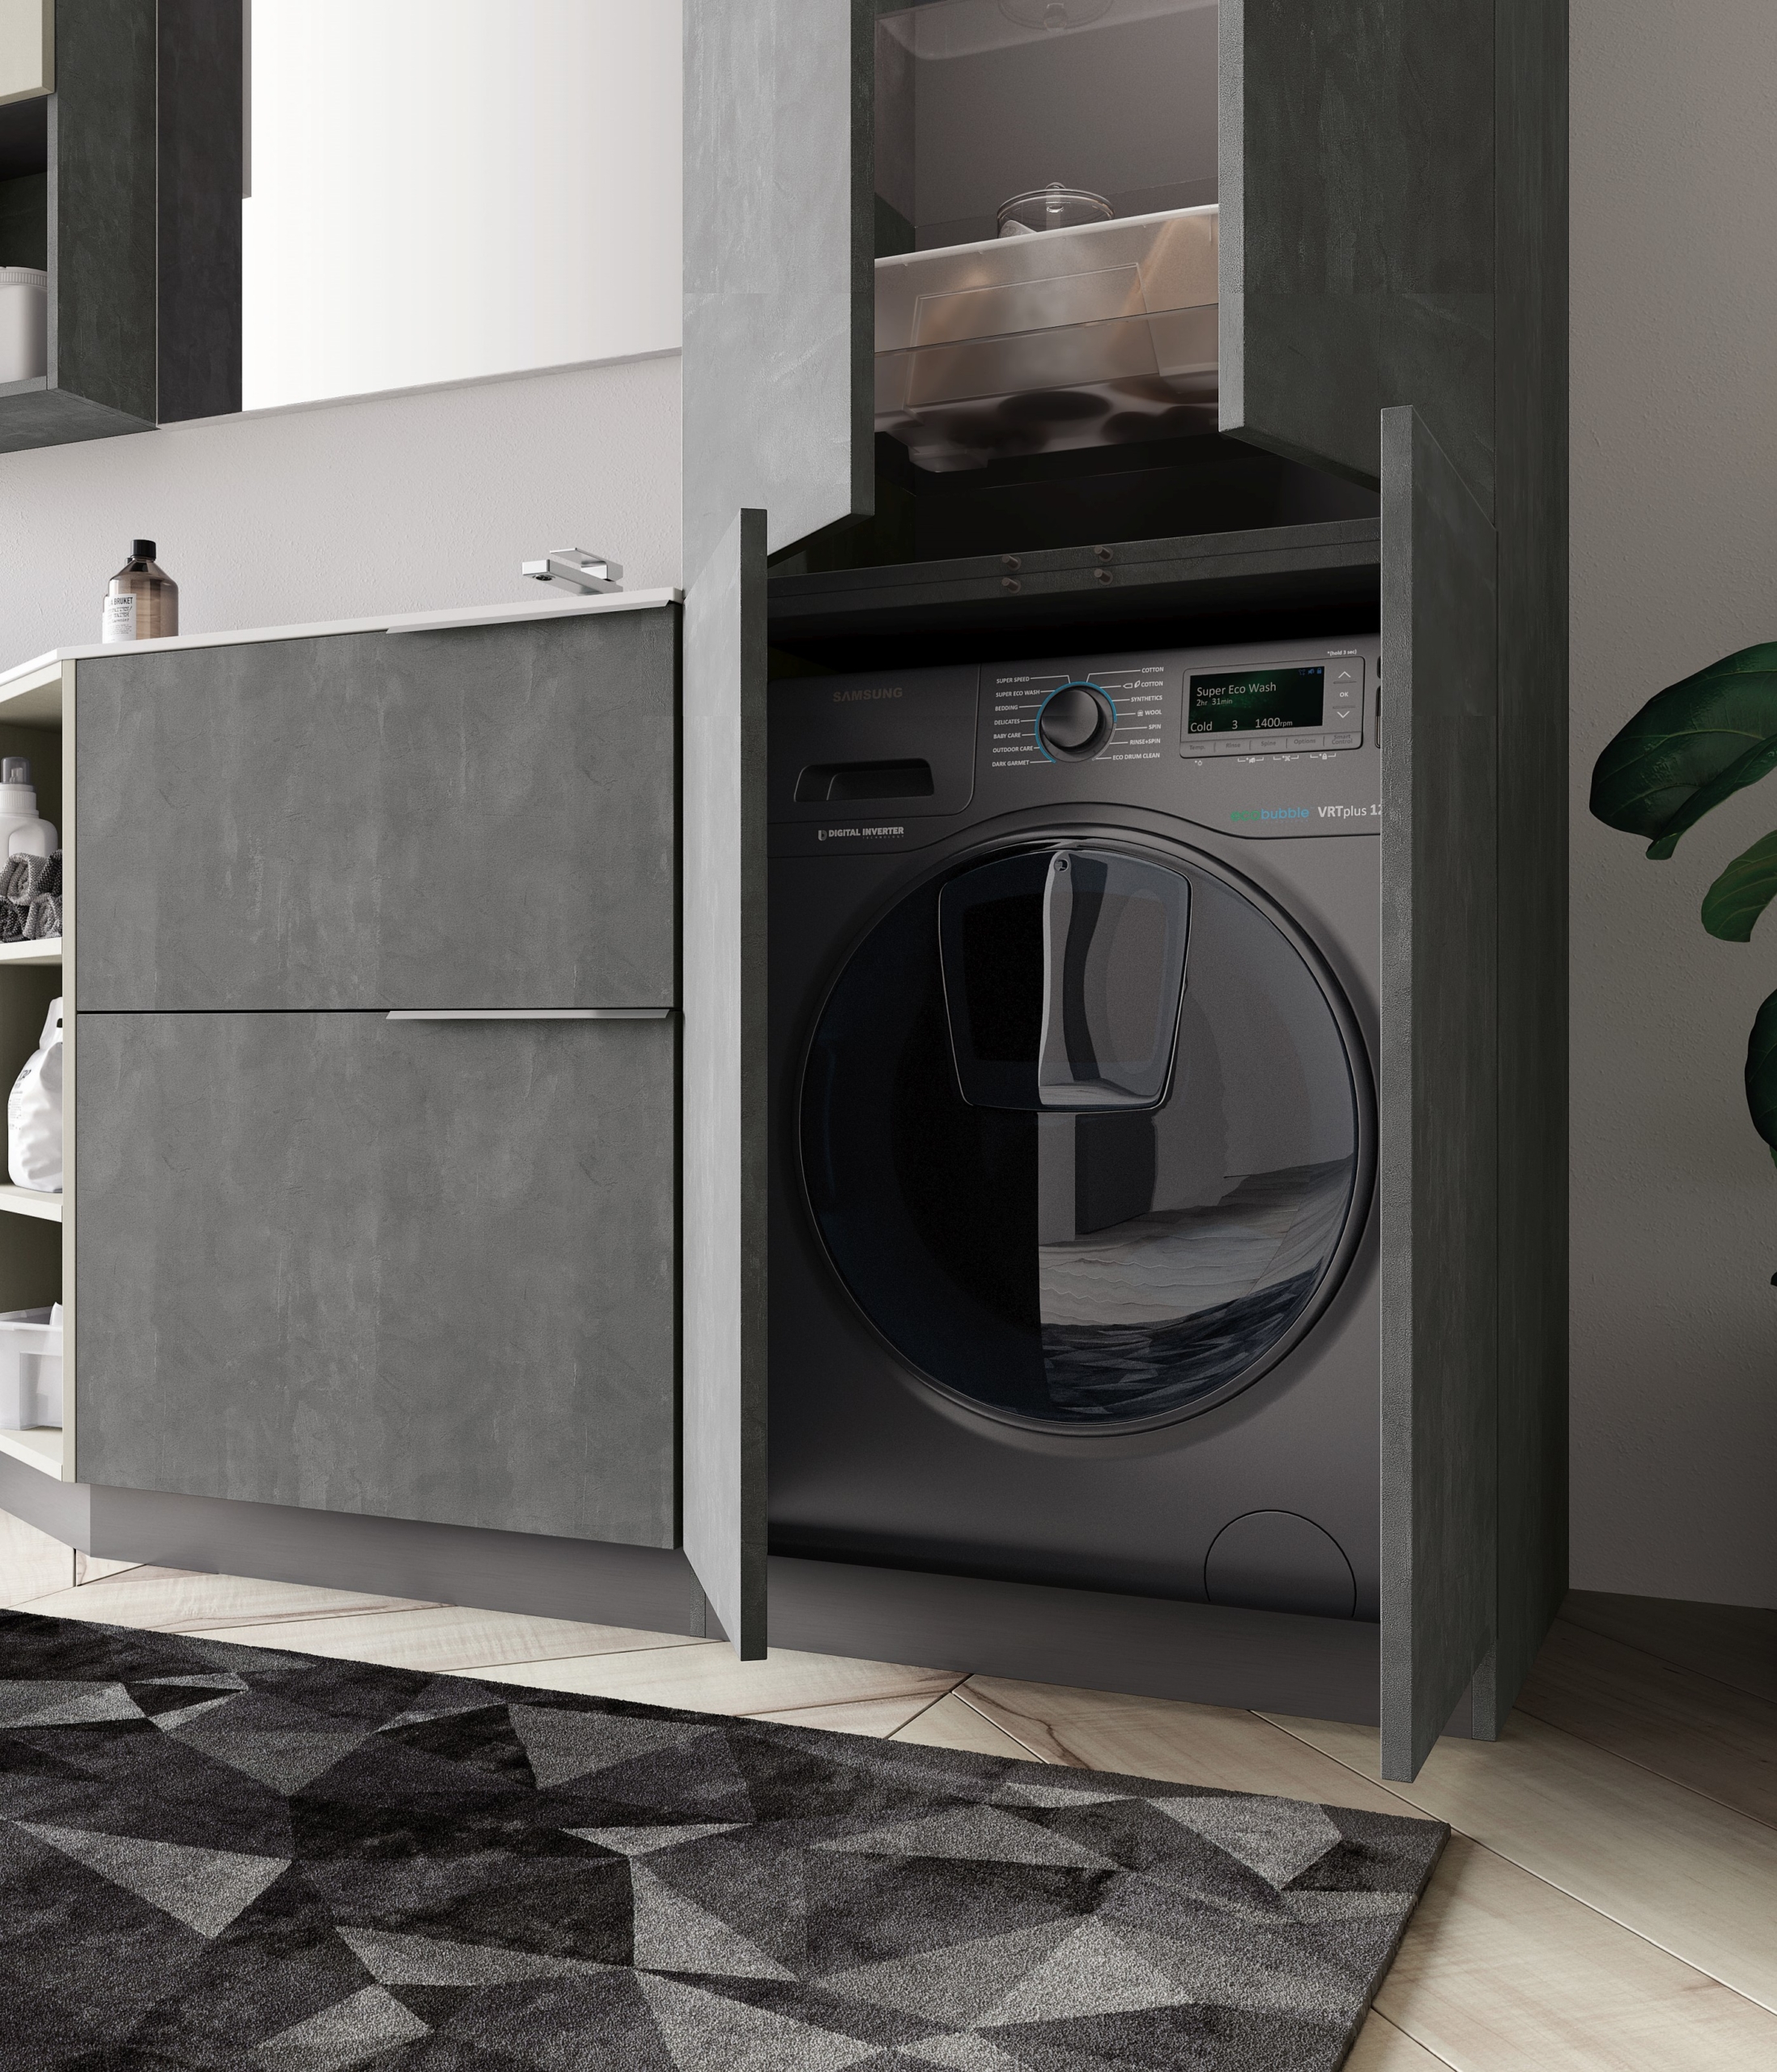 Integrierte Waschmaschine oder Trockner - im Bad, in der Waschküche und im Hauswirtschaftsraum